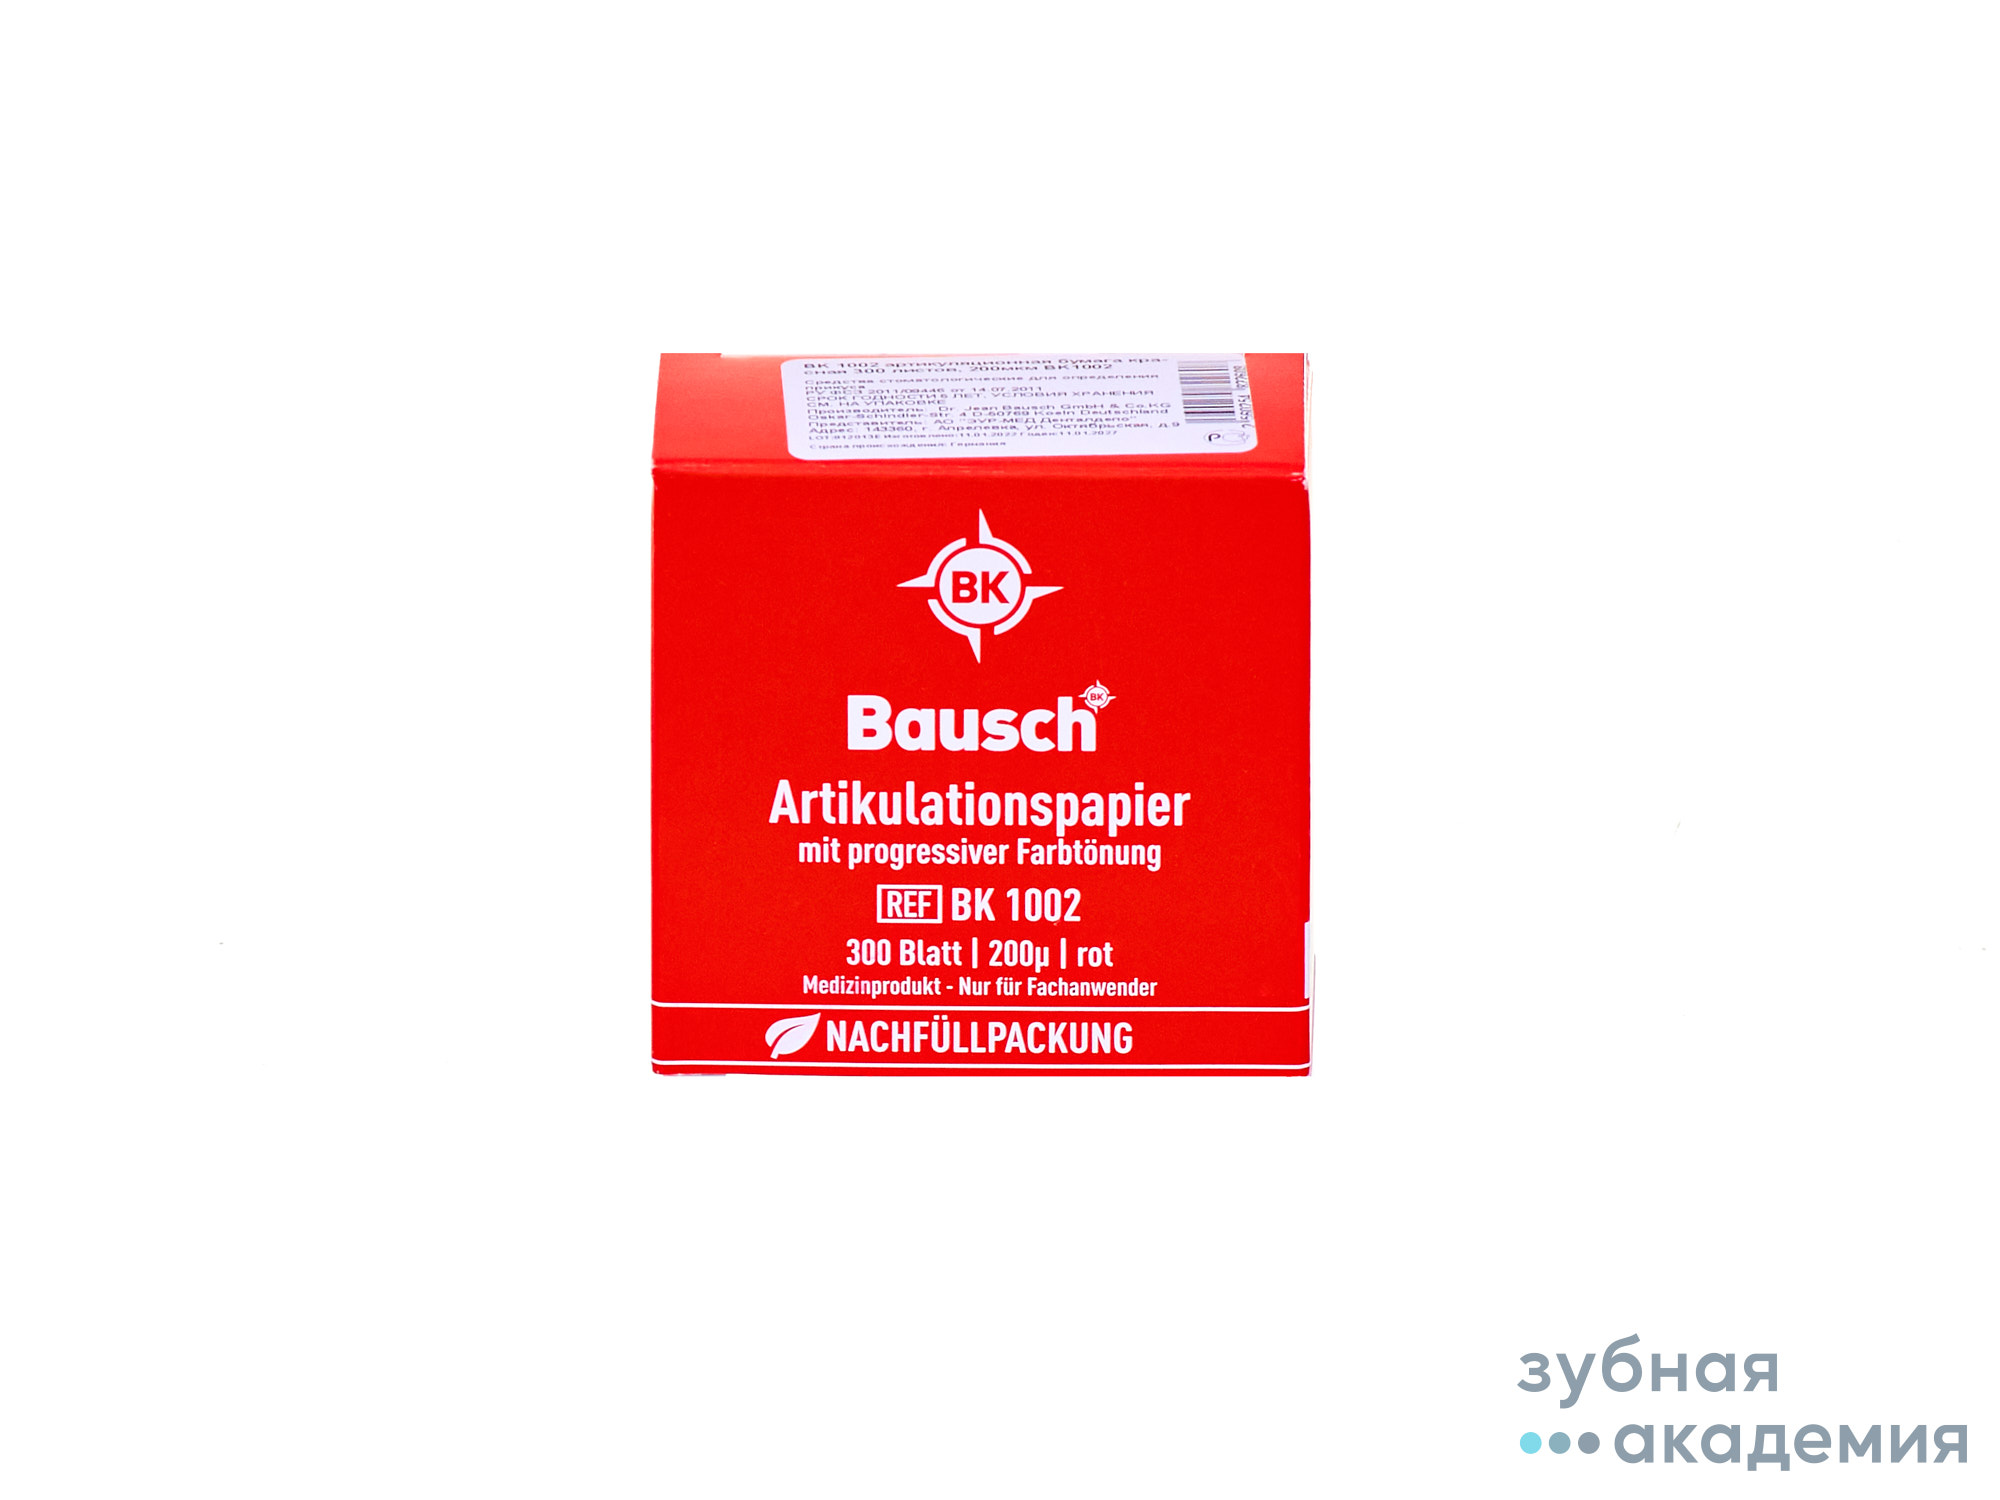 ВК 1002 Артикуляционная бумага упаковка 300 листов 200 мкм, красная /Bausch/Германия